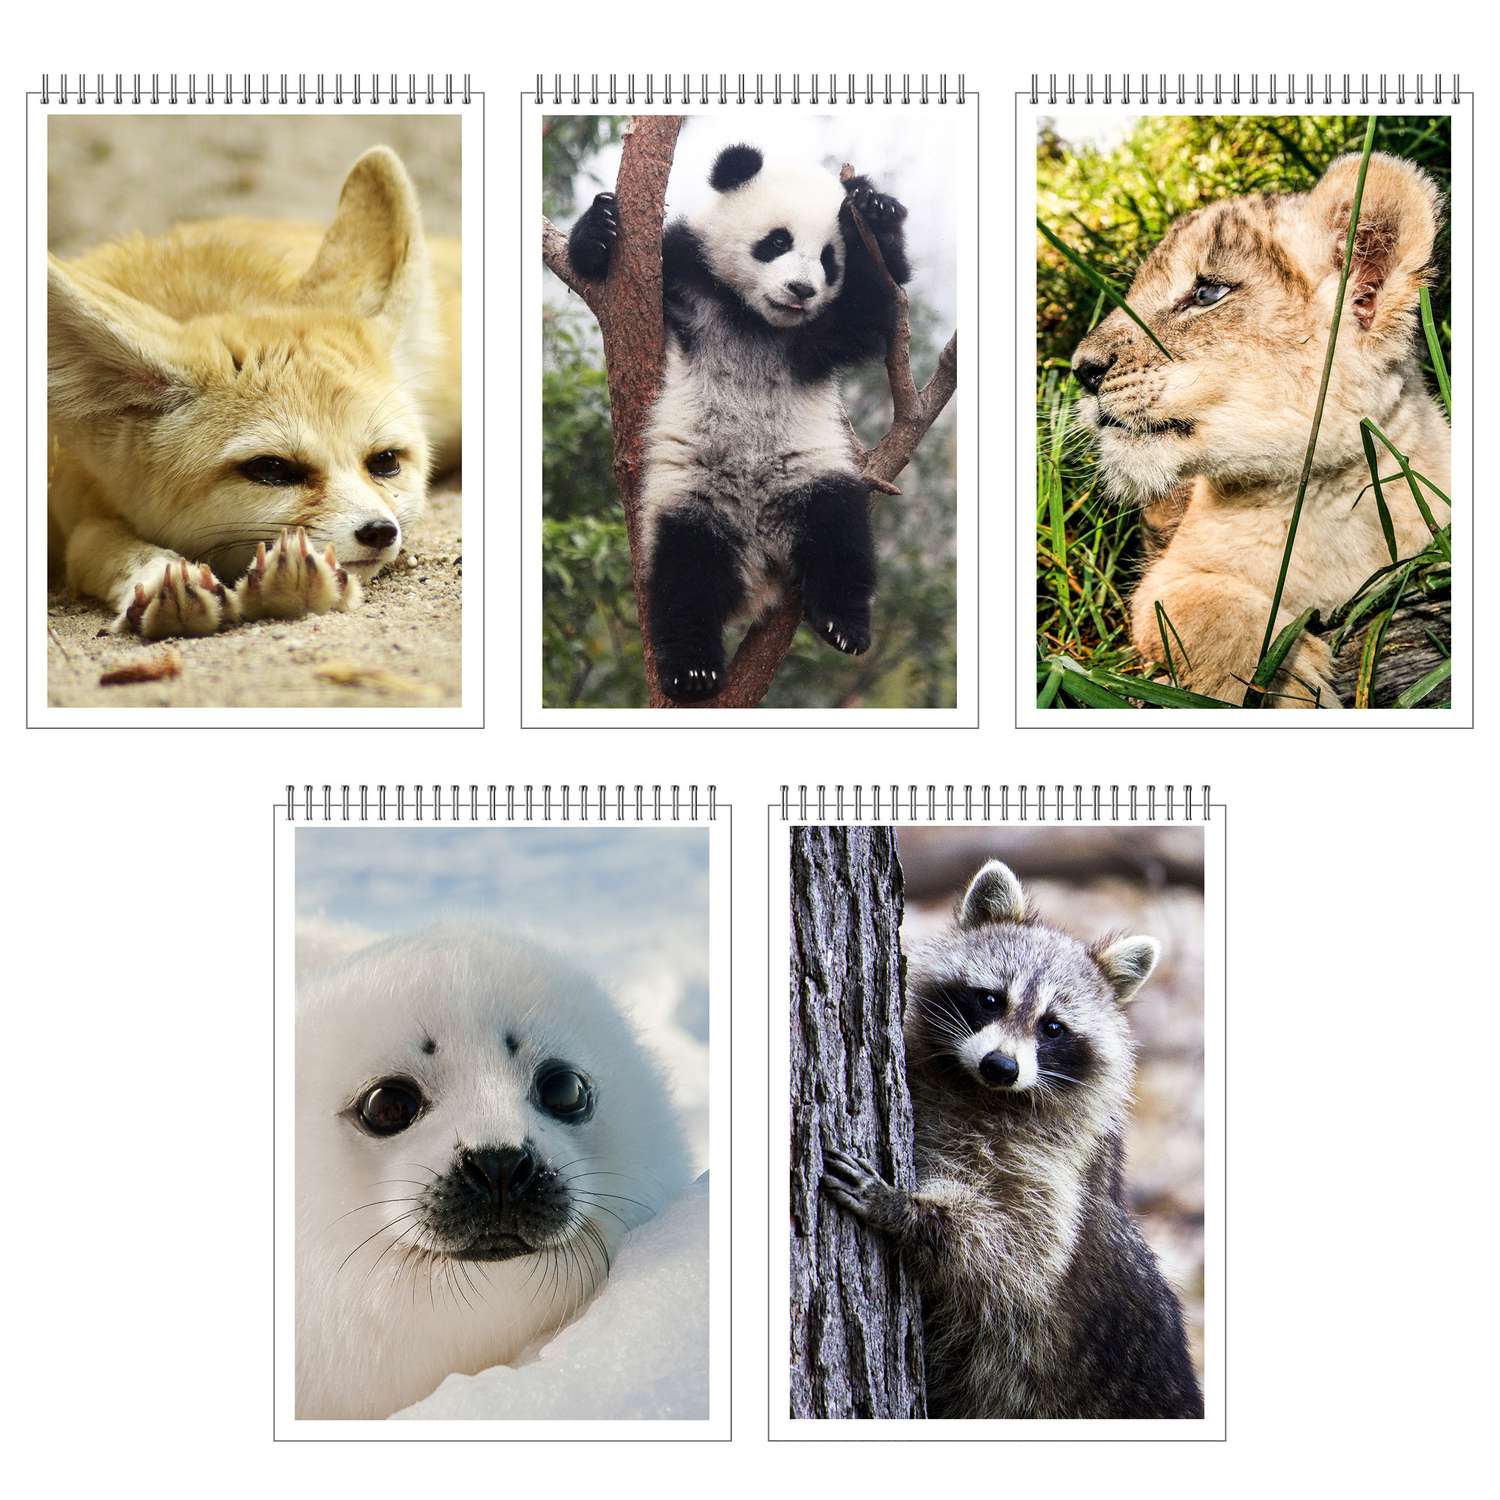 Коллаж из изображений животных, включая одного из персонажей